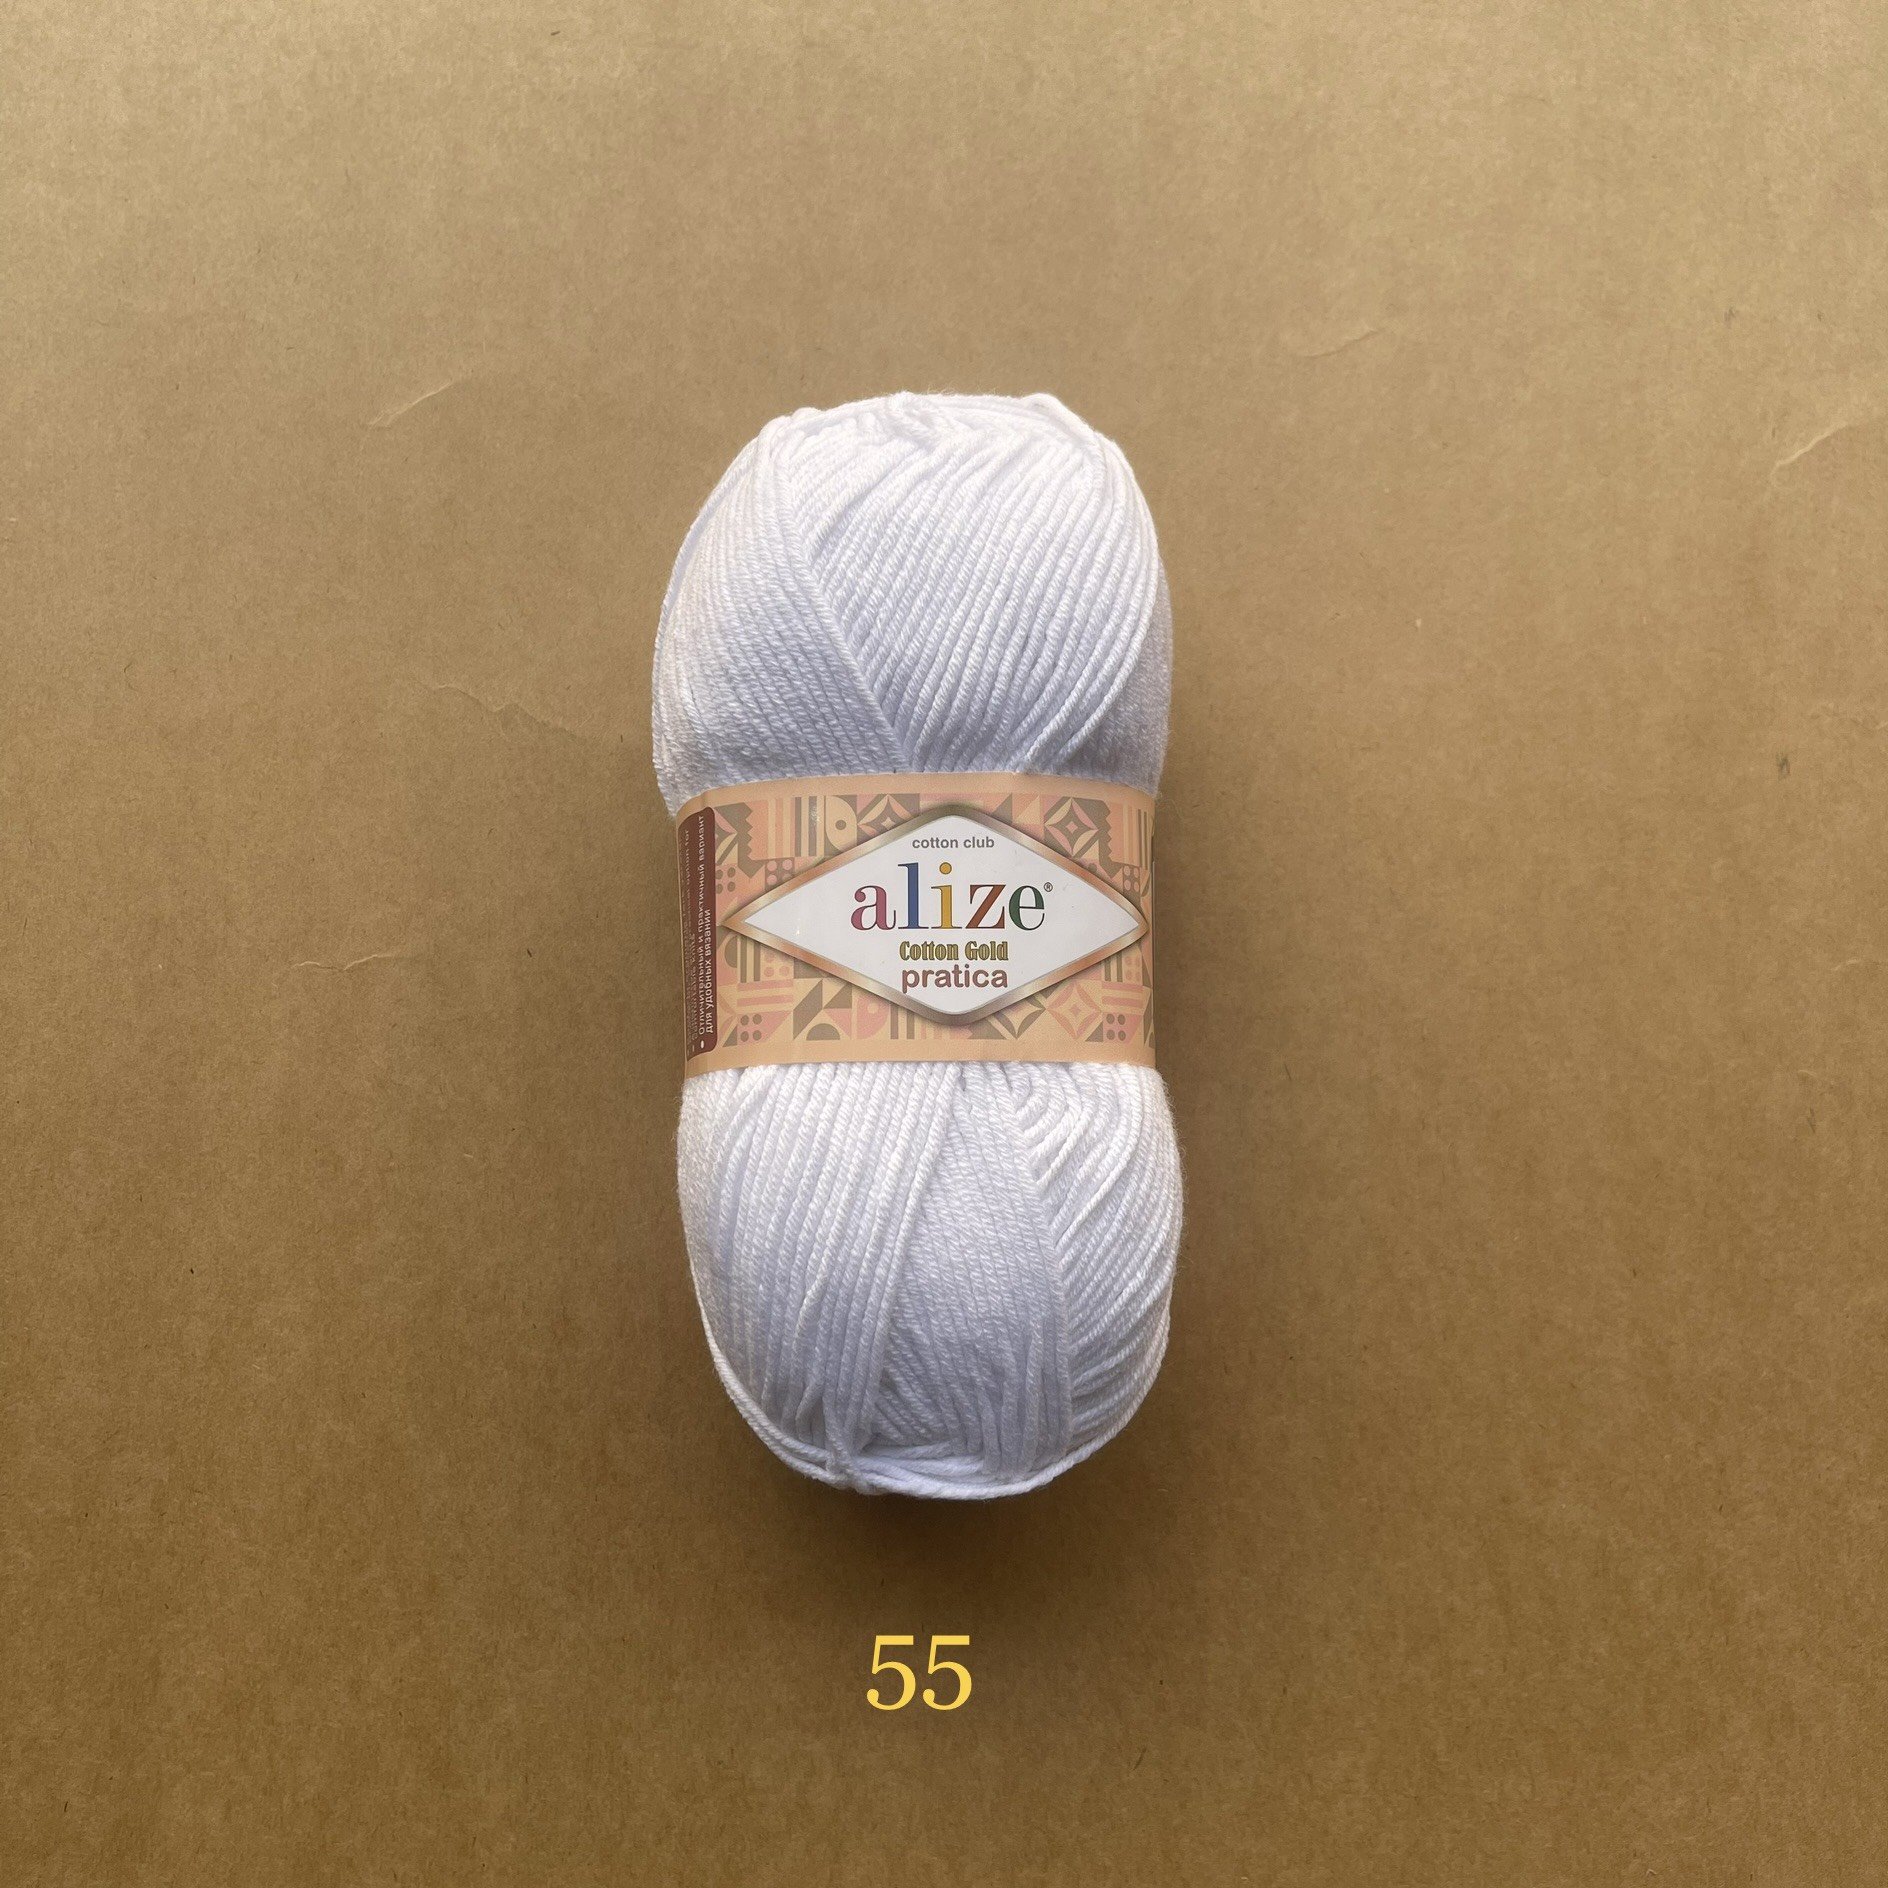 Hình ảnh Cuộn len móc thú to Cotton Gold Pratica nhập khẩu chính hãng Alize Yarns đan móc thú, áo, chăn